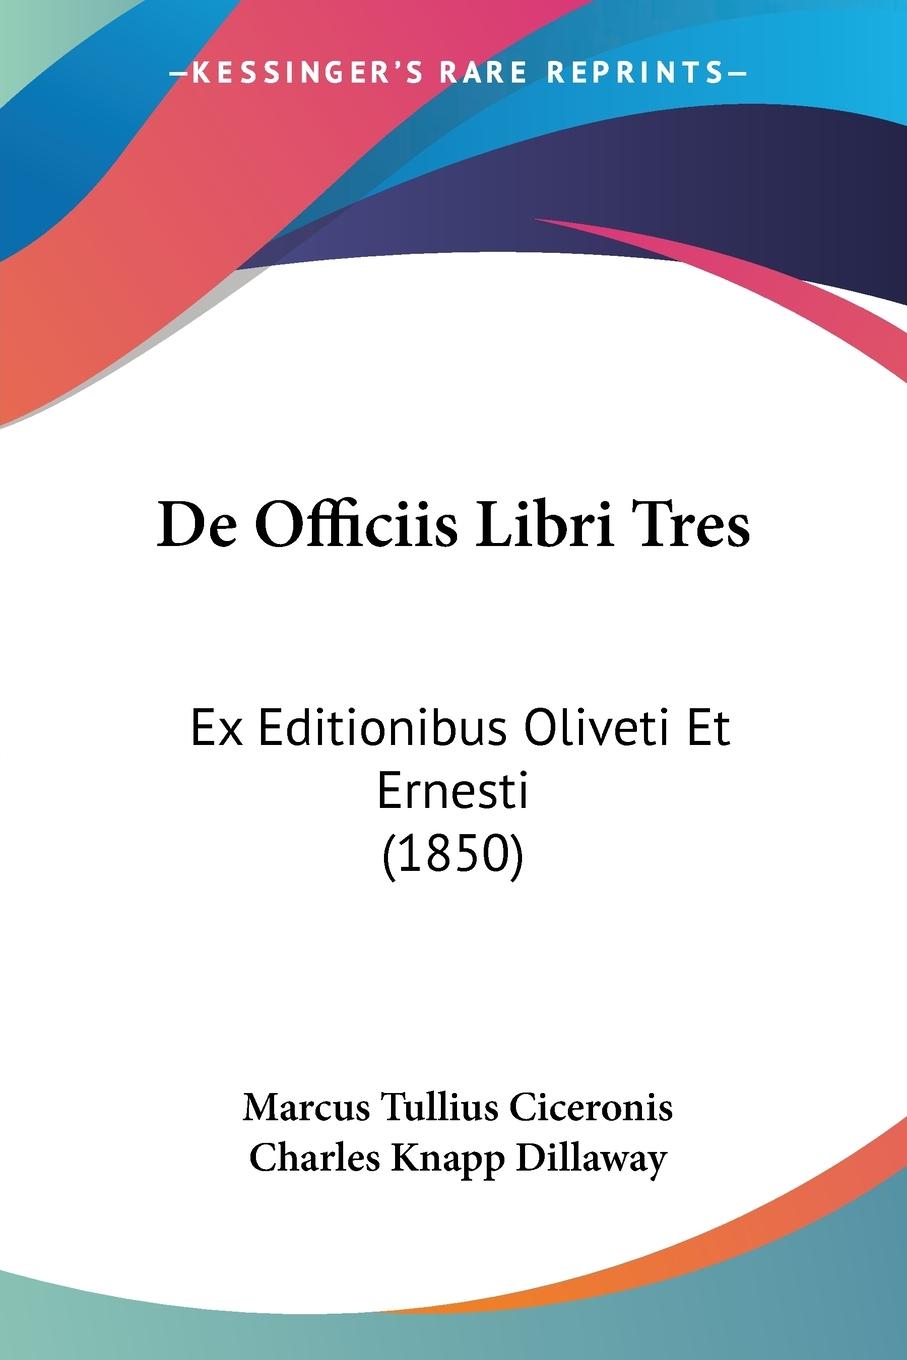 De Officiis Libri Tres - Ciceronis, Marcus Tullius Dillaway, Charles Knapp